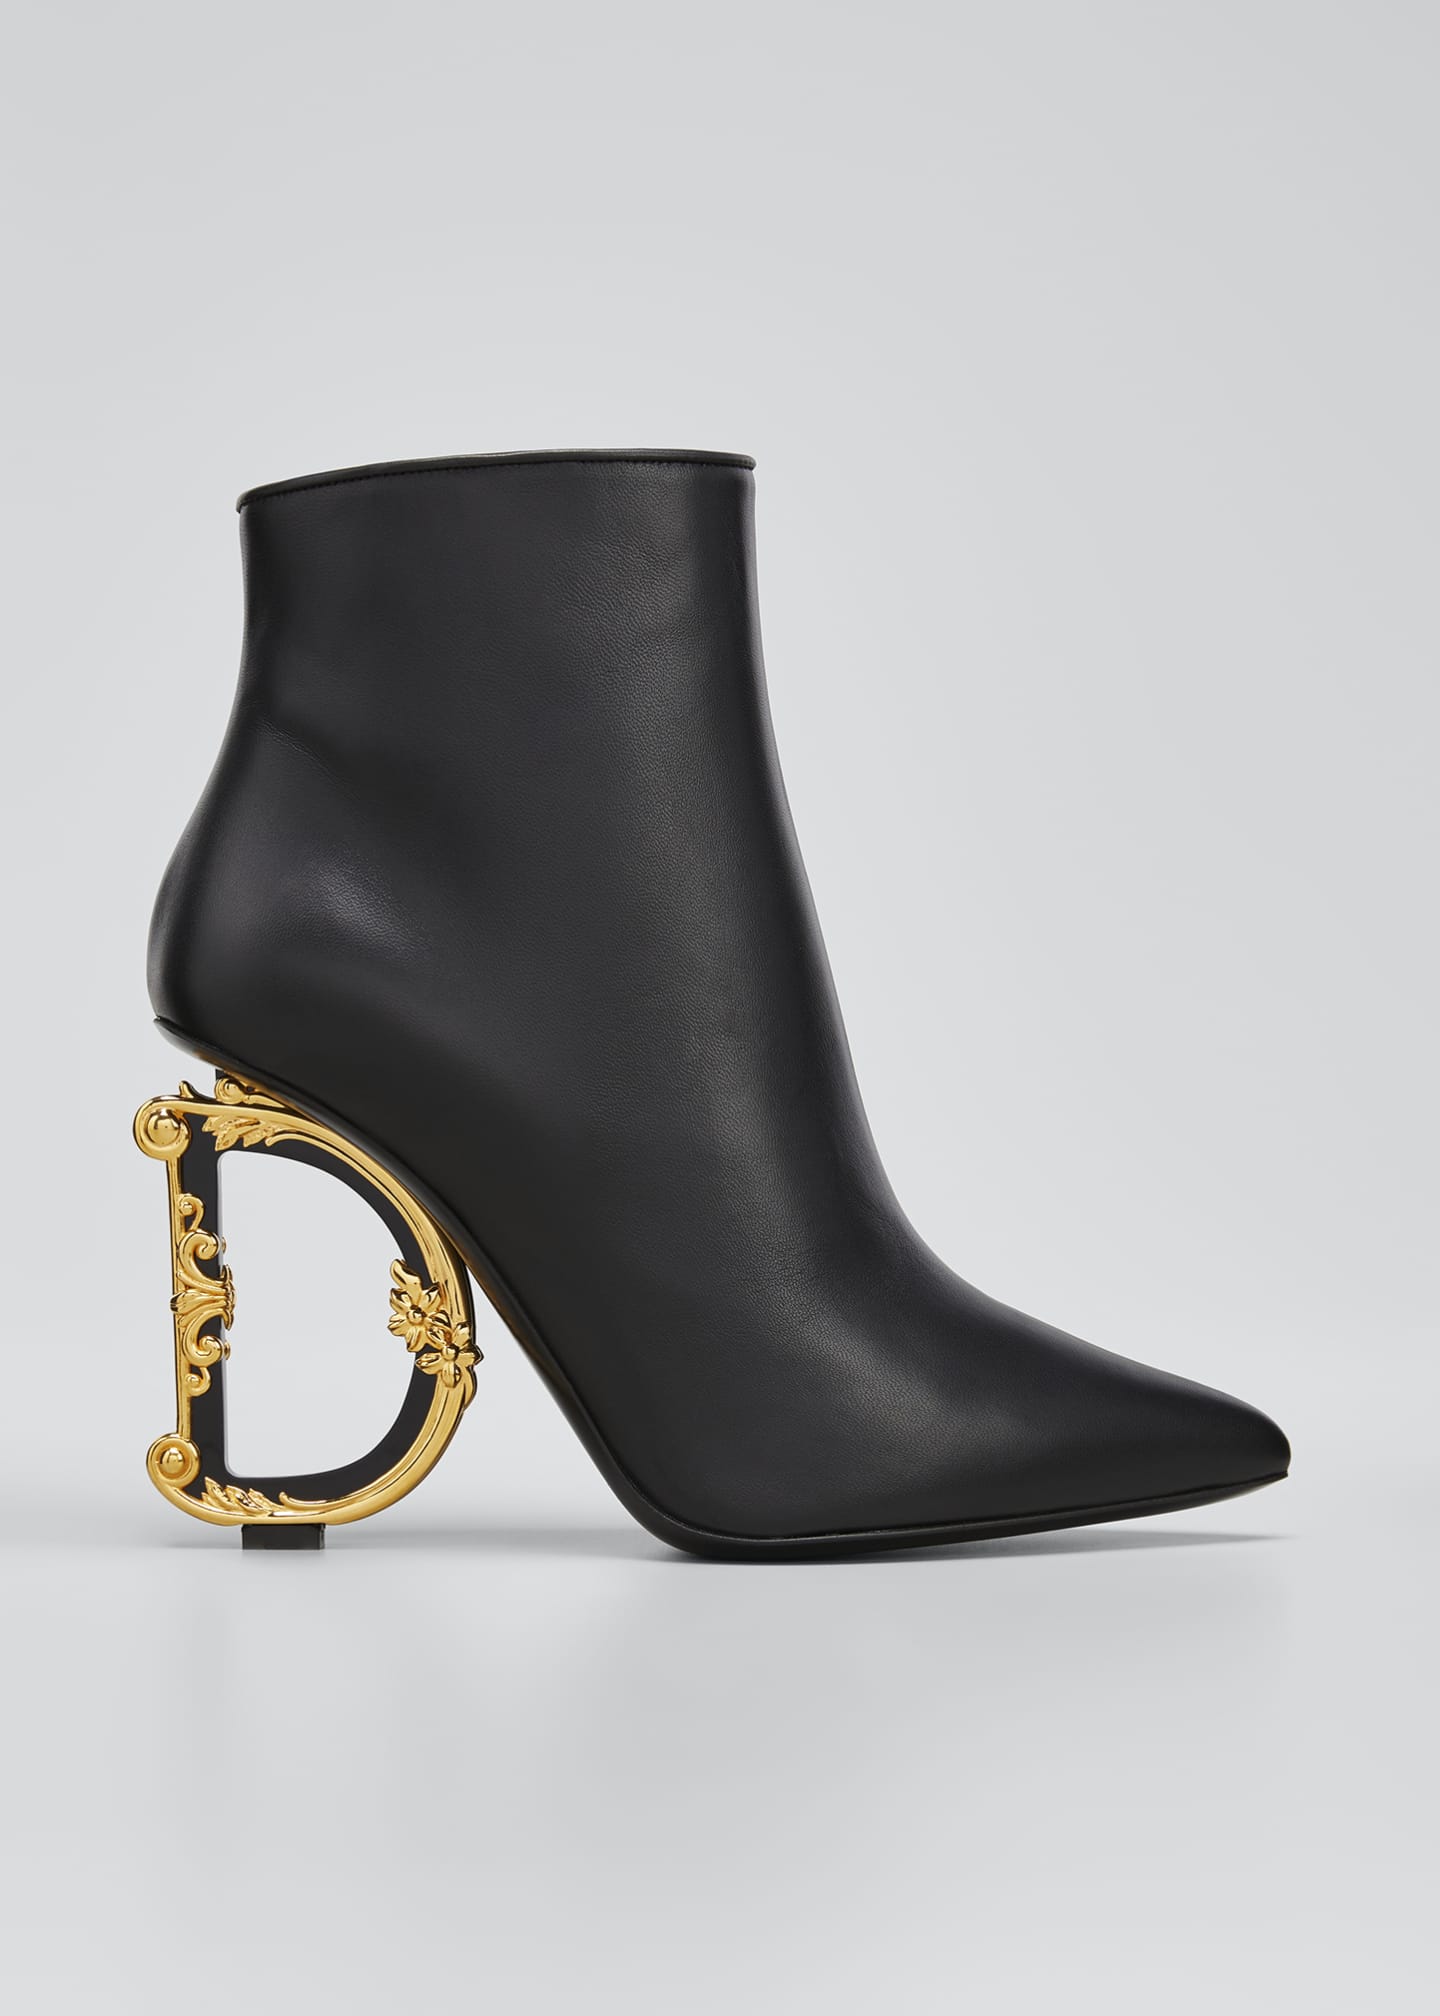 Dolce&Gabbana DG Logo Heel Leather Booties - Bergdorf Goodman